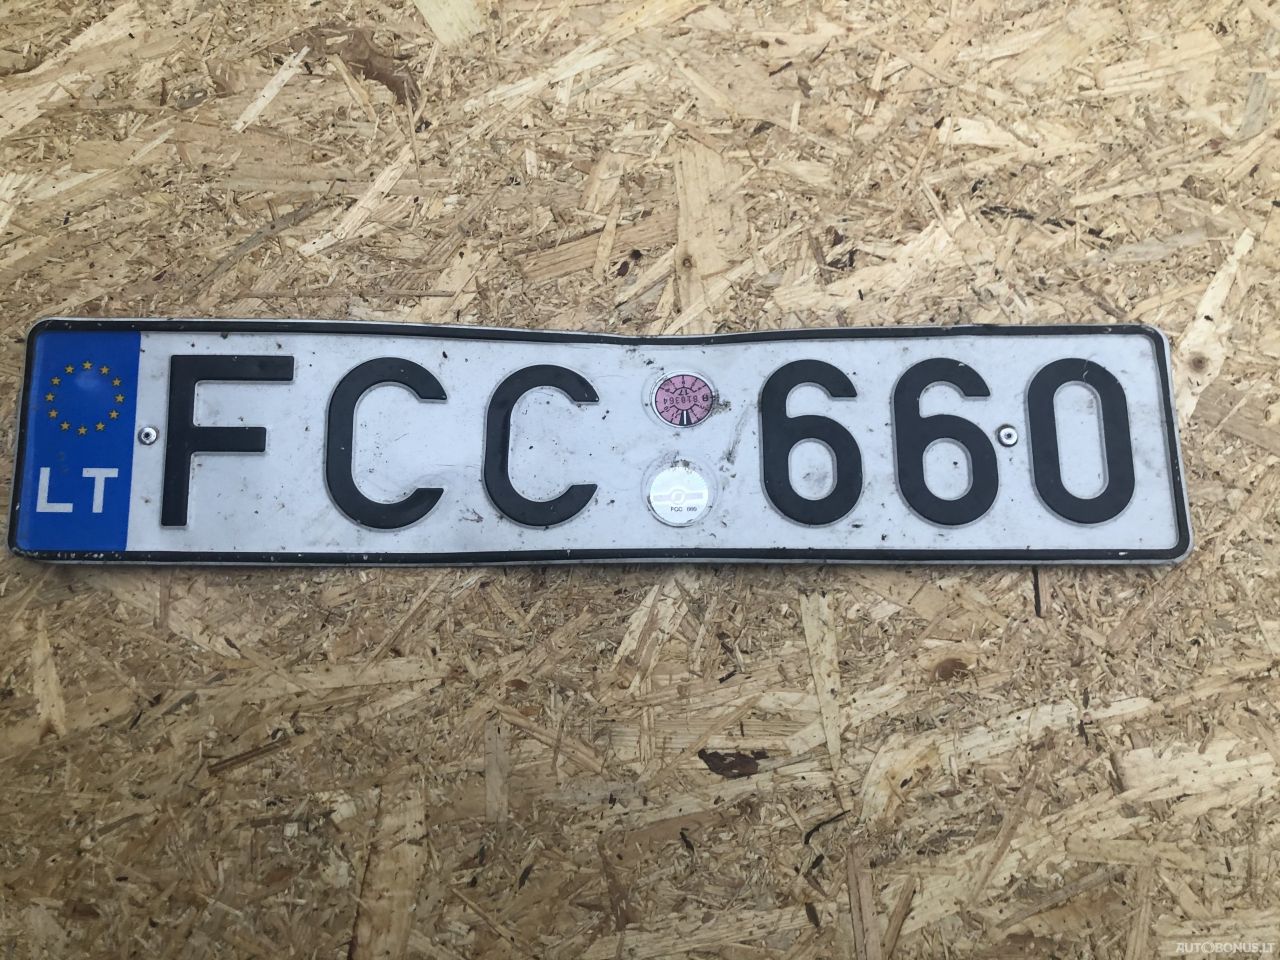  FCC660